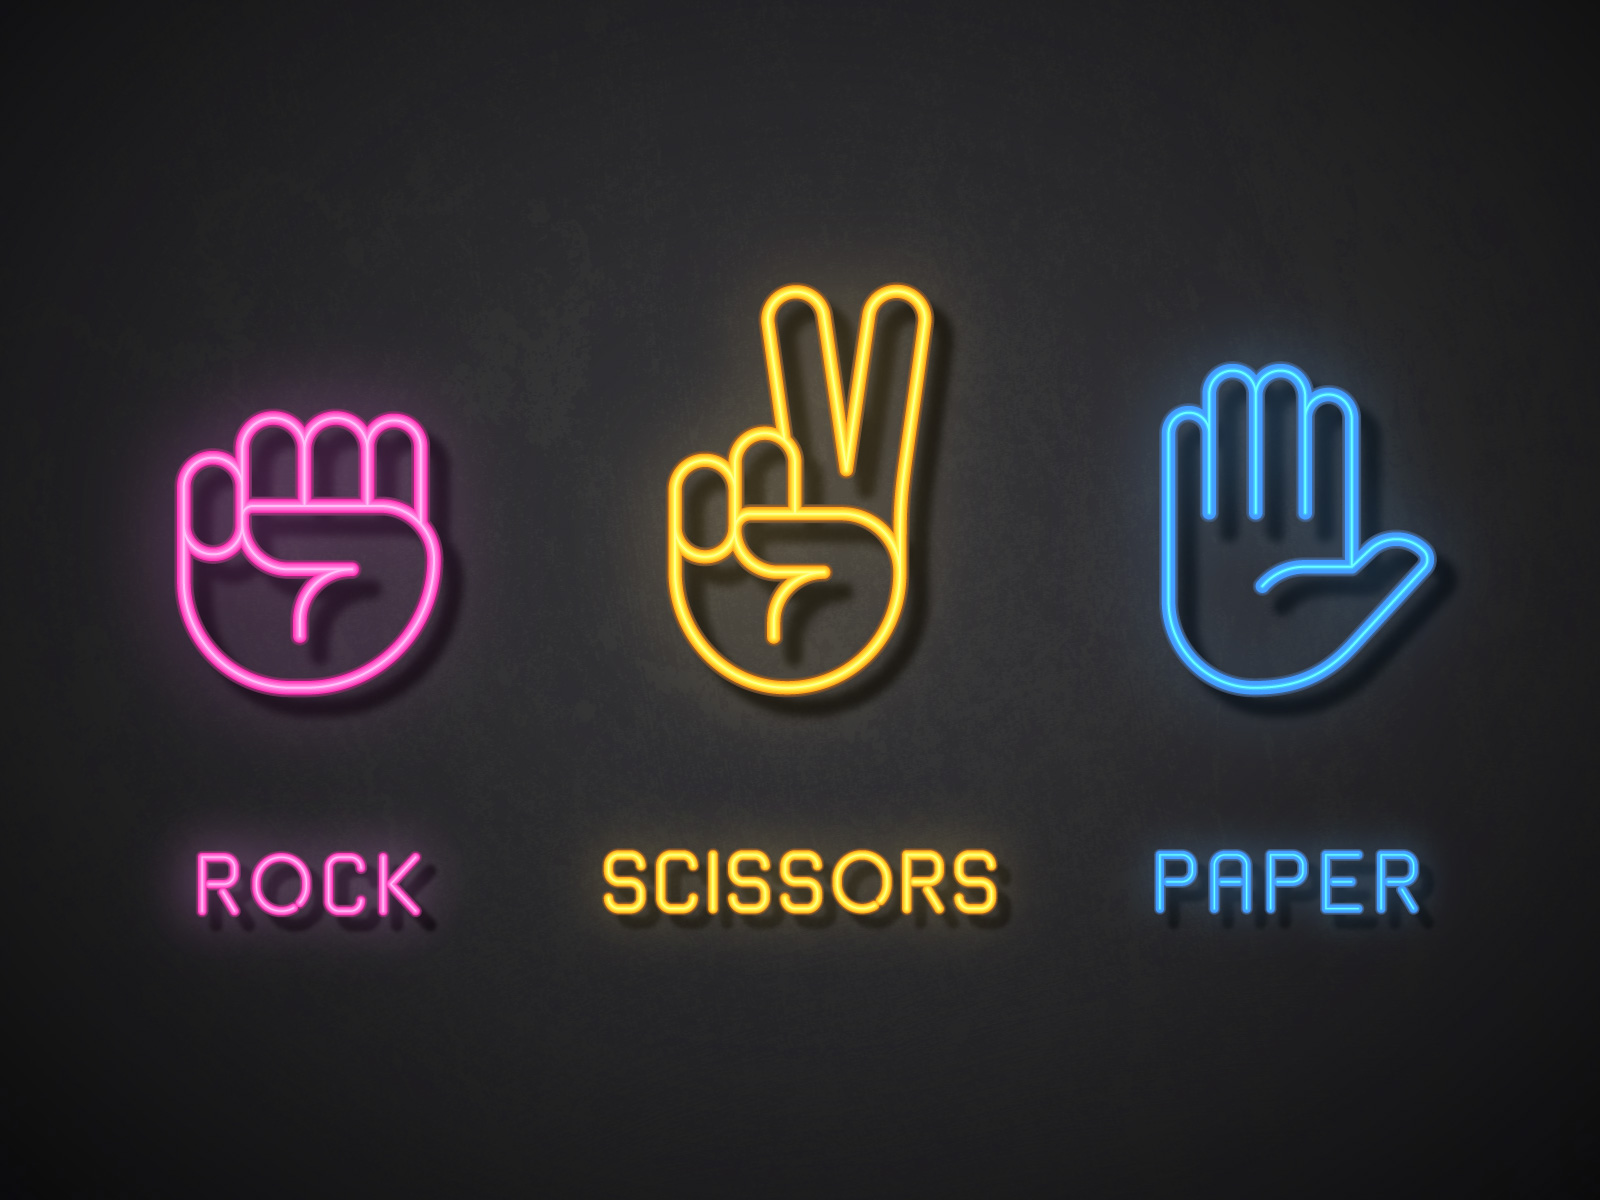 Paper Rock Scissors